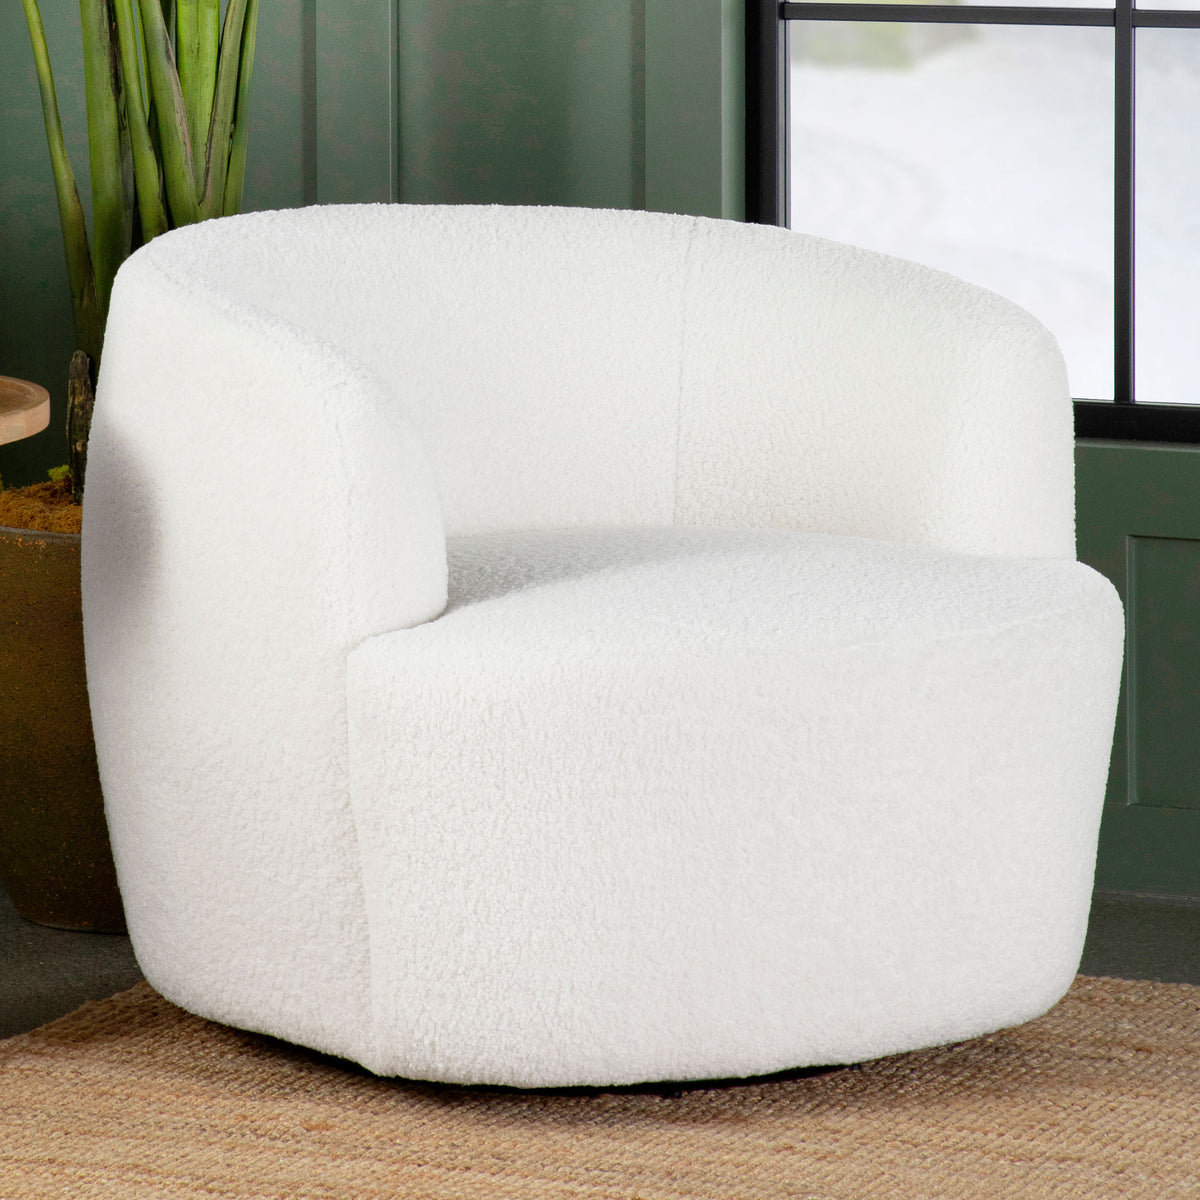 Hudson Upholstered Swivel Chair Natural Hudson Upholstered Swivel Chair Natural Half Price Furniture